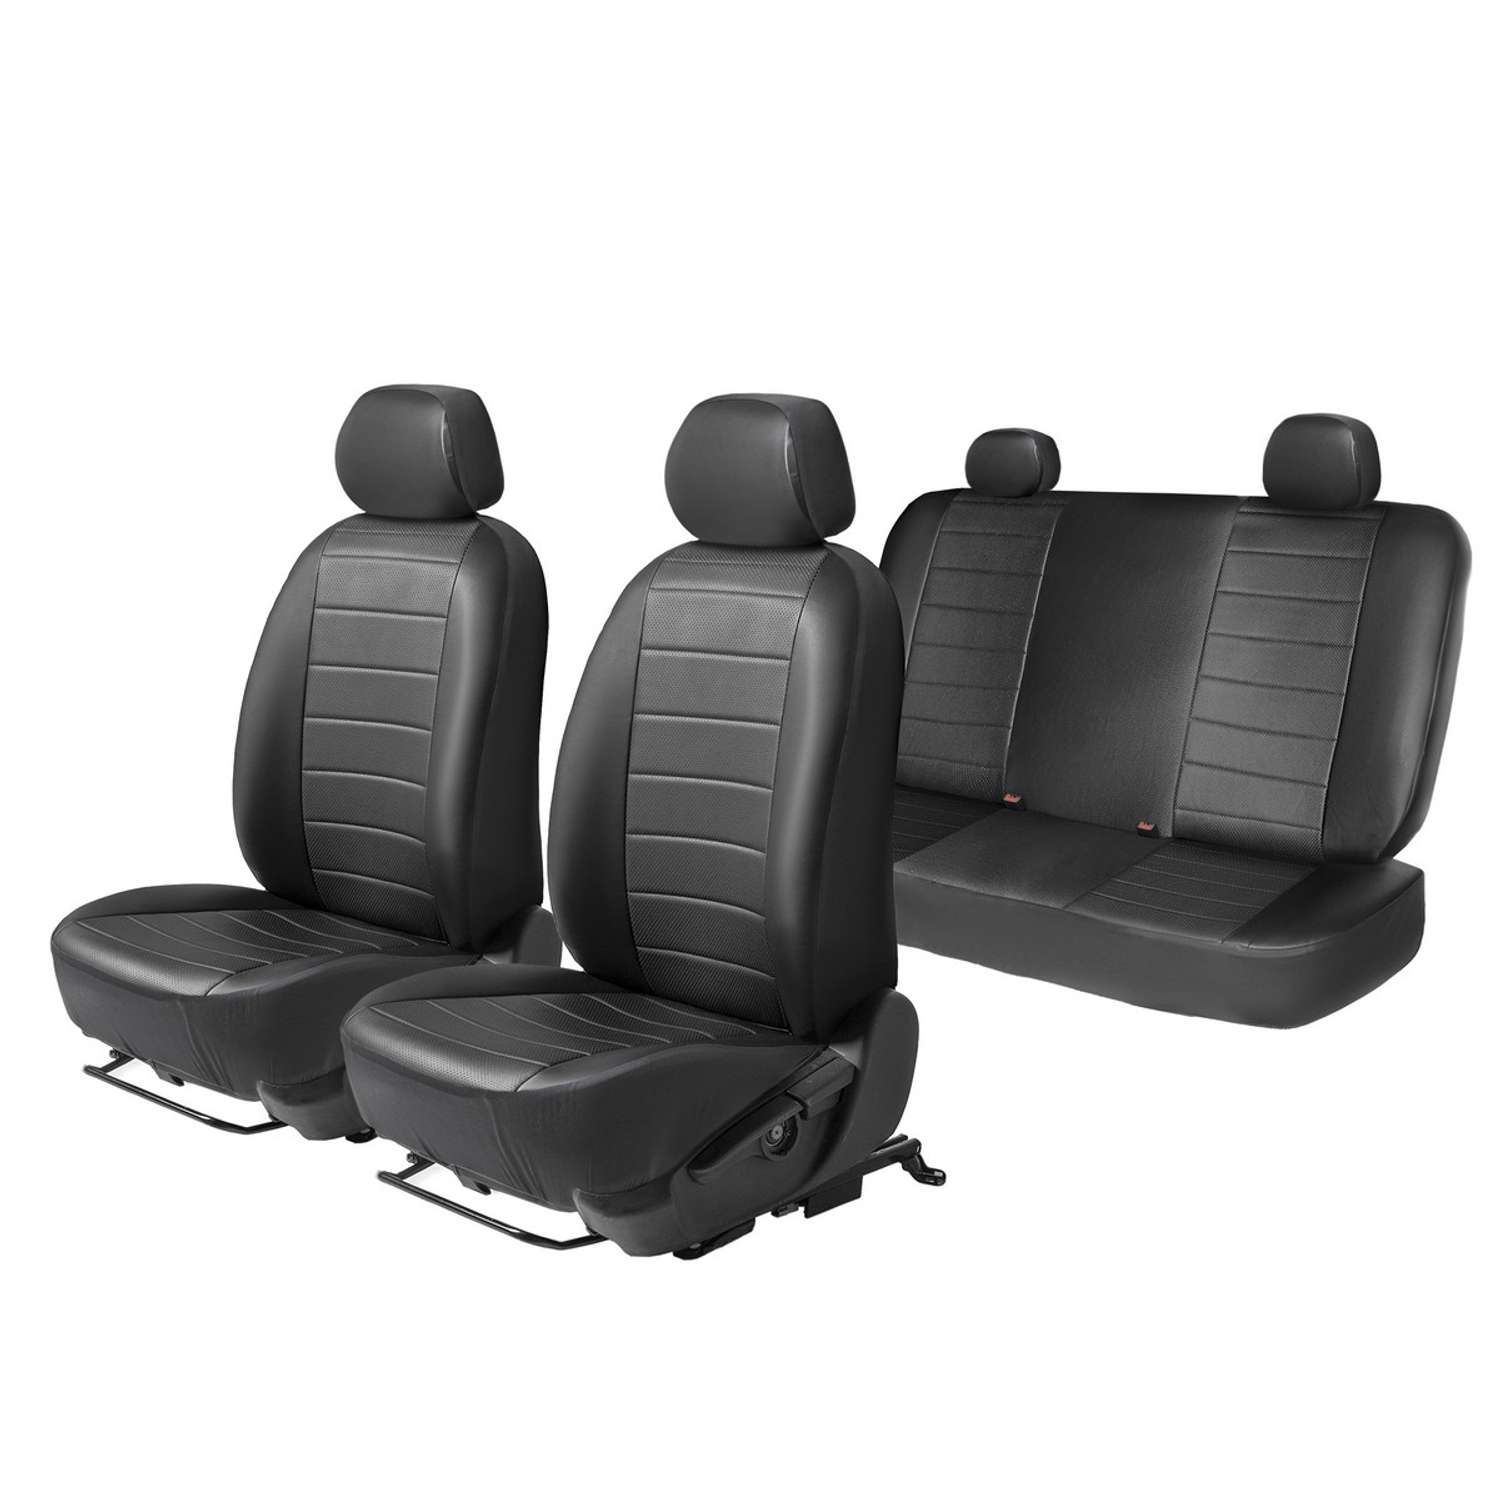 Универсальные чехлы AutoFlex для автомобильных сидений из эко-кожи комплект 4 шт SC.U4.TW1 - фото 1